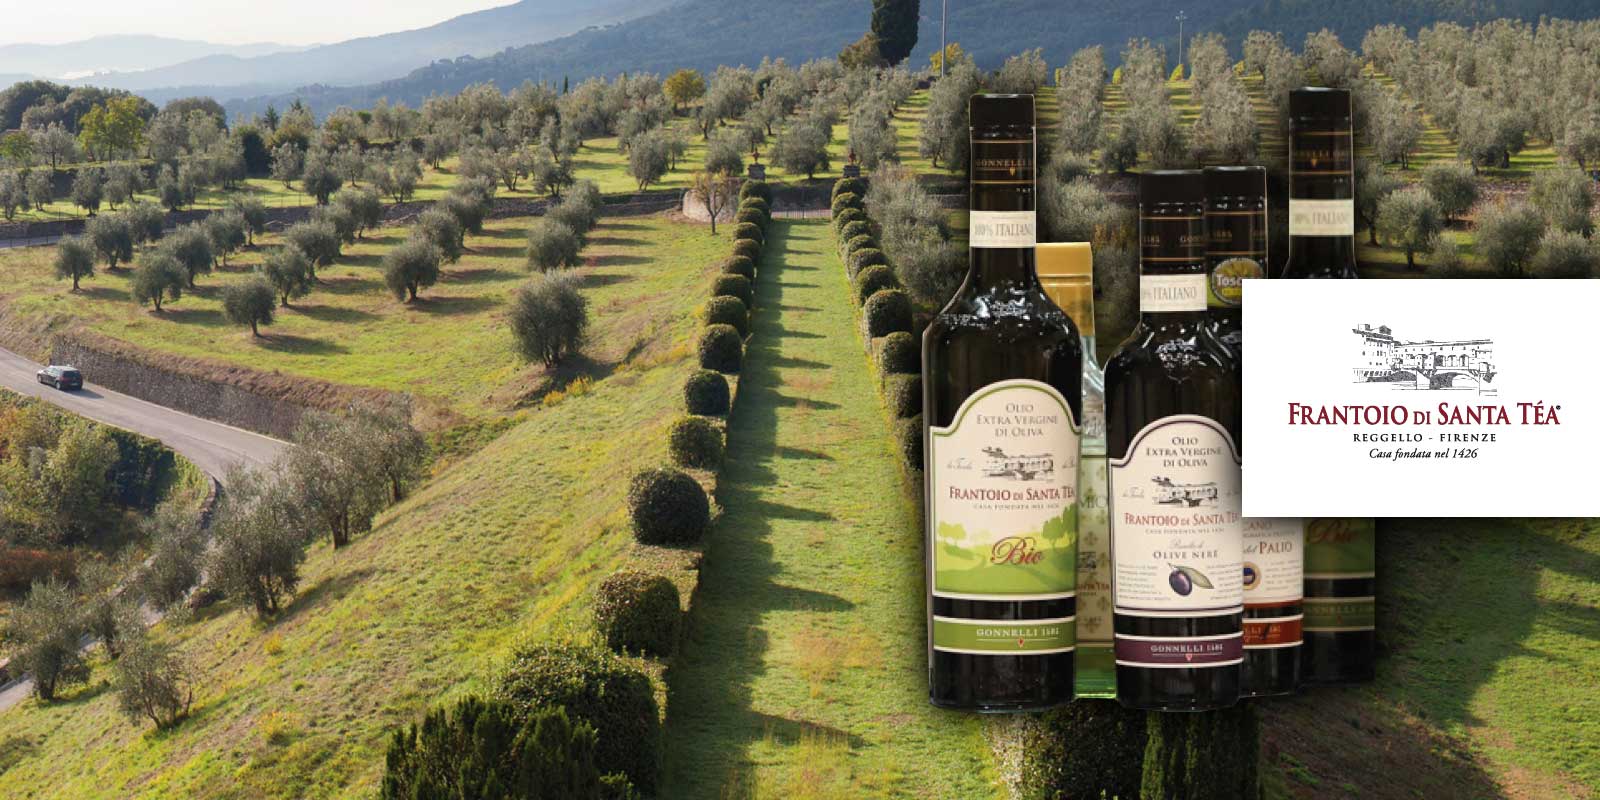 Gonneli Frantoio di Santa Tea 1585 oliivioljy Toscanasta Gonnelli 1585 on brandi, joka edustaa Gonnellin perheen suhdetta perinteisen oljyntuotannon maailmaan. Vuonna 1585 perhe osti Santa Tean maatilan ja sen vuonna 1426 rakennetun oljymyllyn. Nykyaan yritys, joka omistaa Chianti Classicon Vertinen myllyn, on yksi Italian huippuosaajista neitsytoliivioljyn maailmassa. Filosofia on aina ollut tarjota terveellista, aitoa ja luonnollista oliivioljya.
Gonnelli 1585, joka on saavuttanut useita virstanpylvaita alalla ja on jatkuvasti vahvistanut oliivioljyn tarkeytta elintarvikkeena, jolla on lukemattomia ravitsemuksellisia ja terveellisia ominaisuuksia, seka maun ja arvon kantaja jokaisessa ruoassa ja valmistuksessa. Nykyaan Gonnelli 1585 tarjoaa laajan ja monipuolisen tuotevalikoiman, jossa on monia erilaisia oljyja eri makuineen ja aromineen.